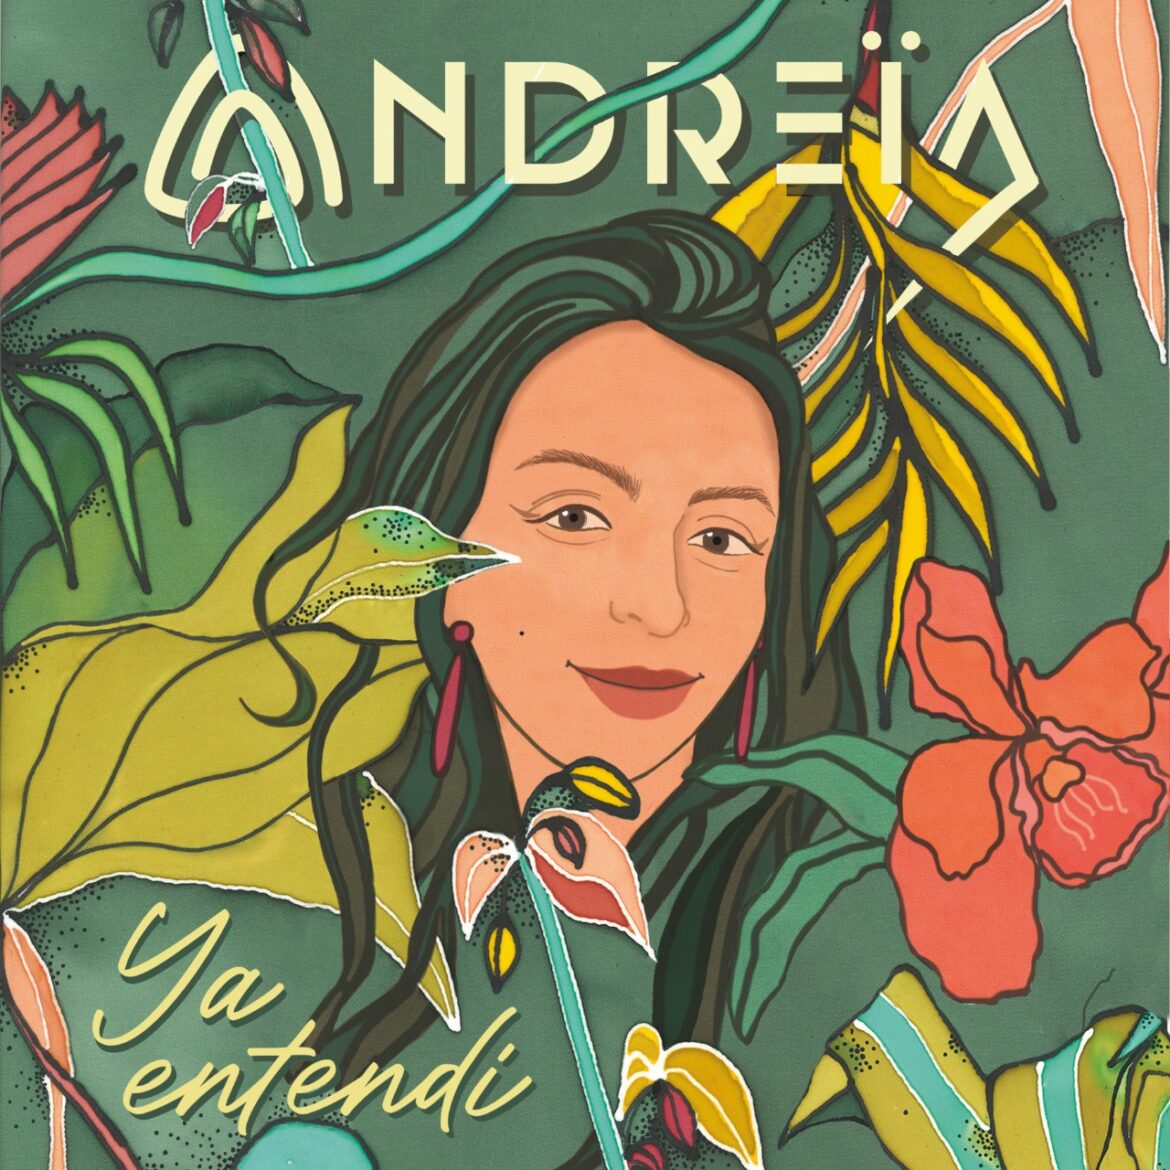 Andreïa debuta con ‘Ya entendí’, un disco para sanar, arriesgarse y amar diferente